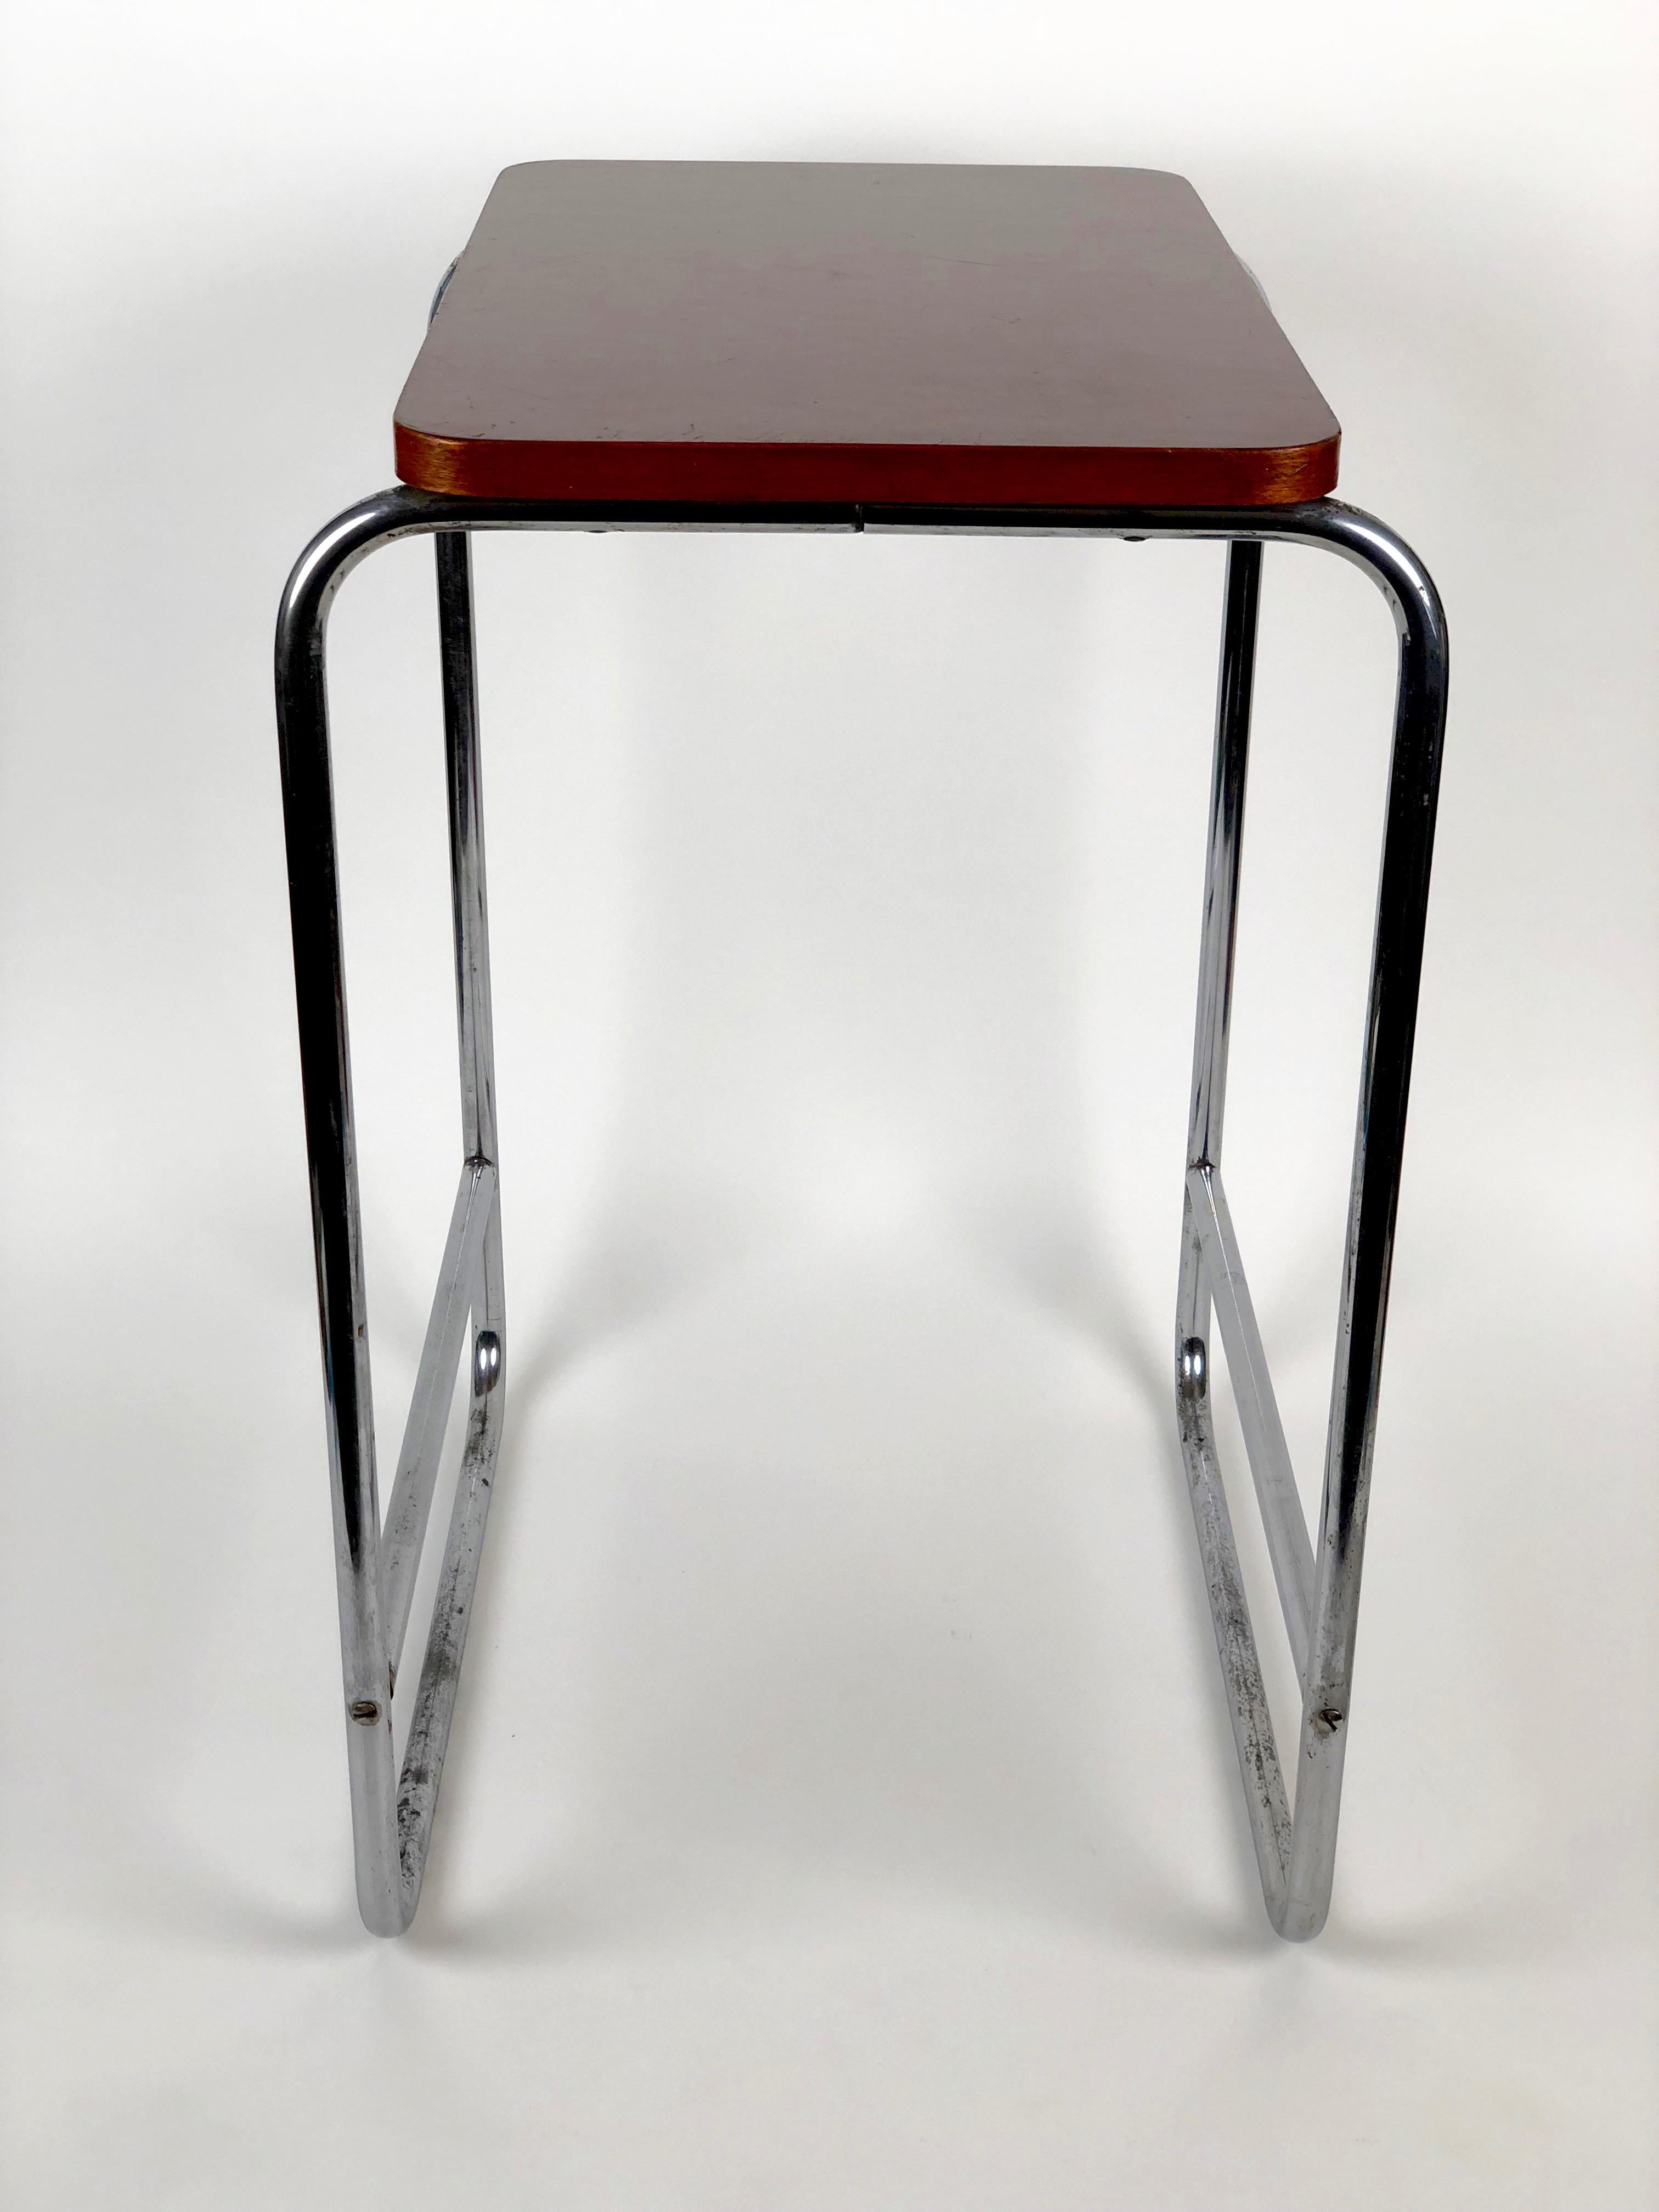 Dieser in den 1930er Jahren hergestellte Tisch besteht aus einem verchromten Stahlrohrgestell und einer Holzplatte mit Bakelitbeschichtung
laminatoberfläche. Das Bakelit ist in sehr gutem Zustand und hat noch seine ursprüngliche, glänzende